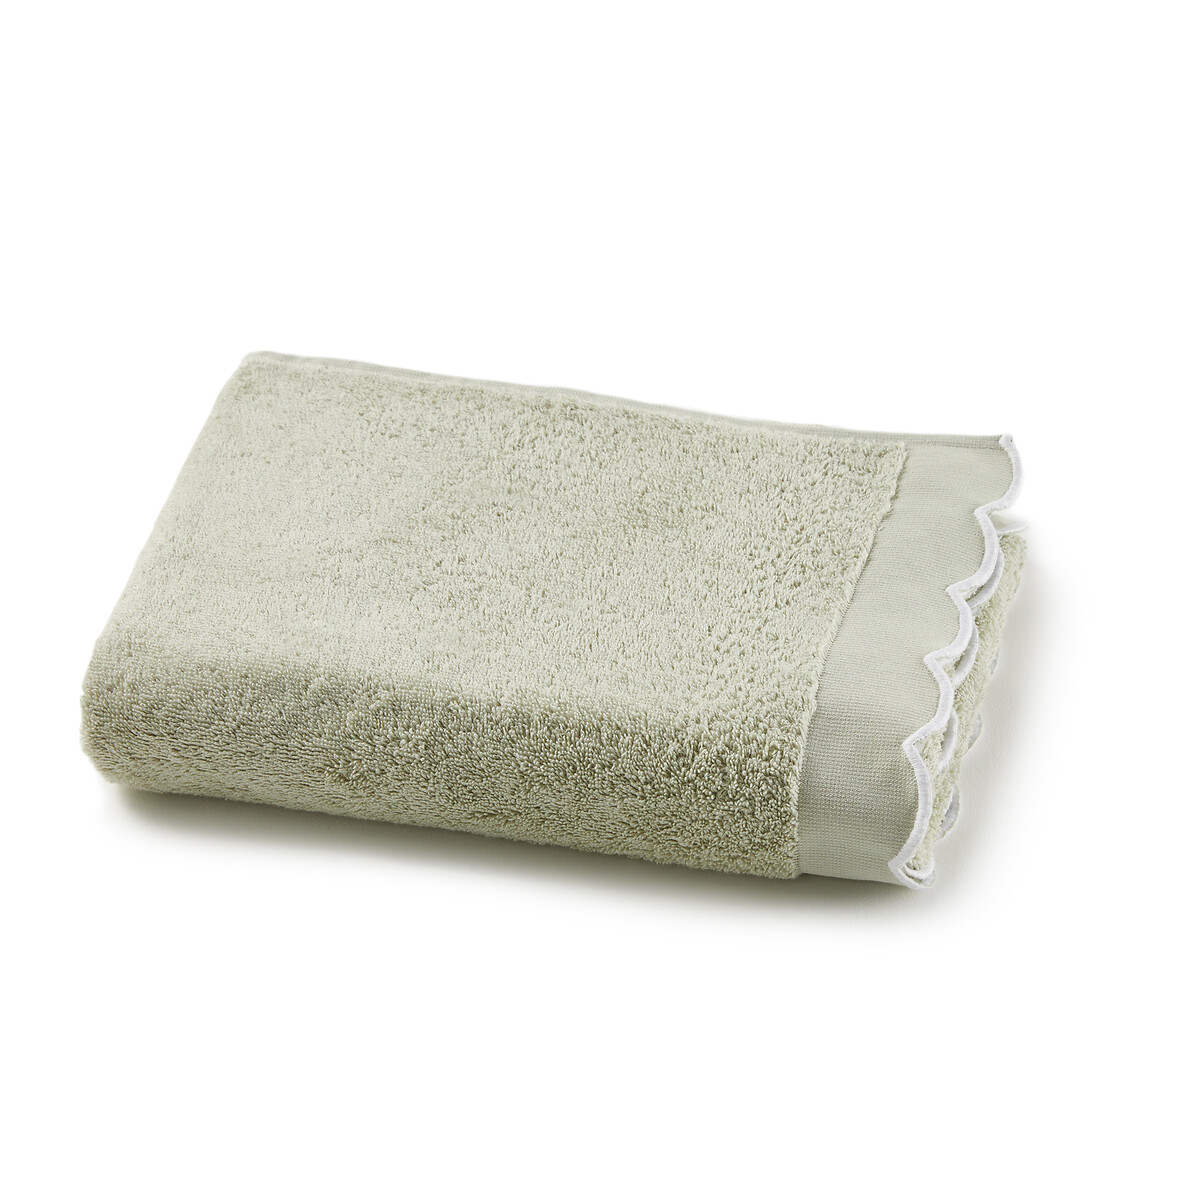 Полотенце банное махровое однотонное 500 гм Antoinette 50 x 100 см зеленый полотенце laredoute полотенце банное 600 гм качество best 100 x 150 см зеленый